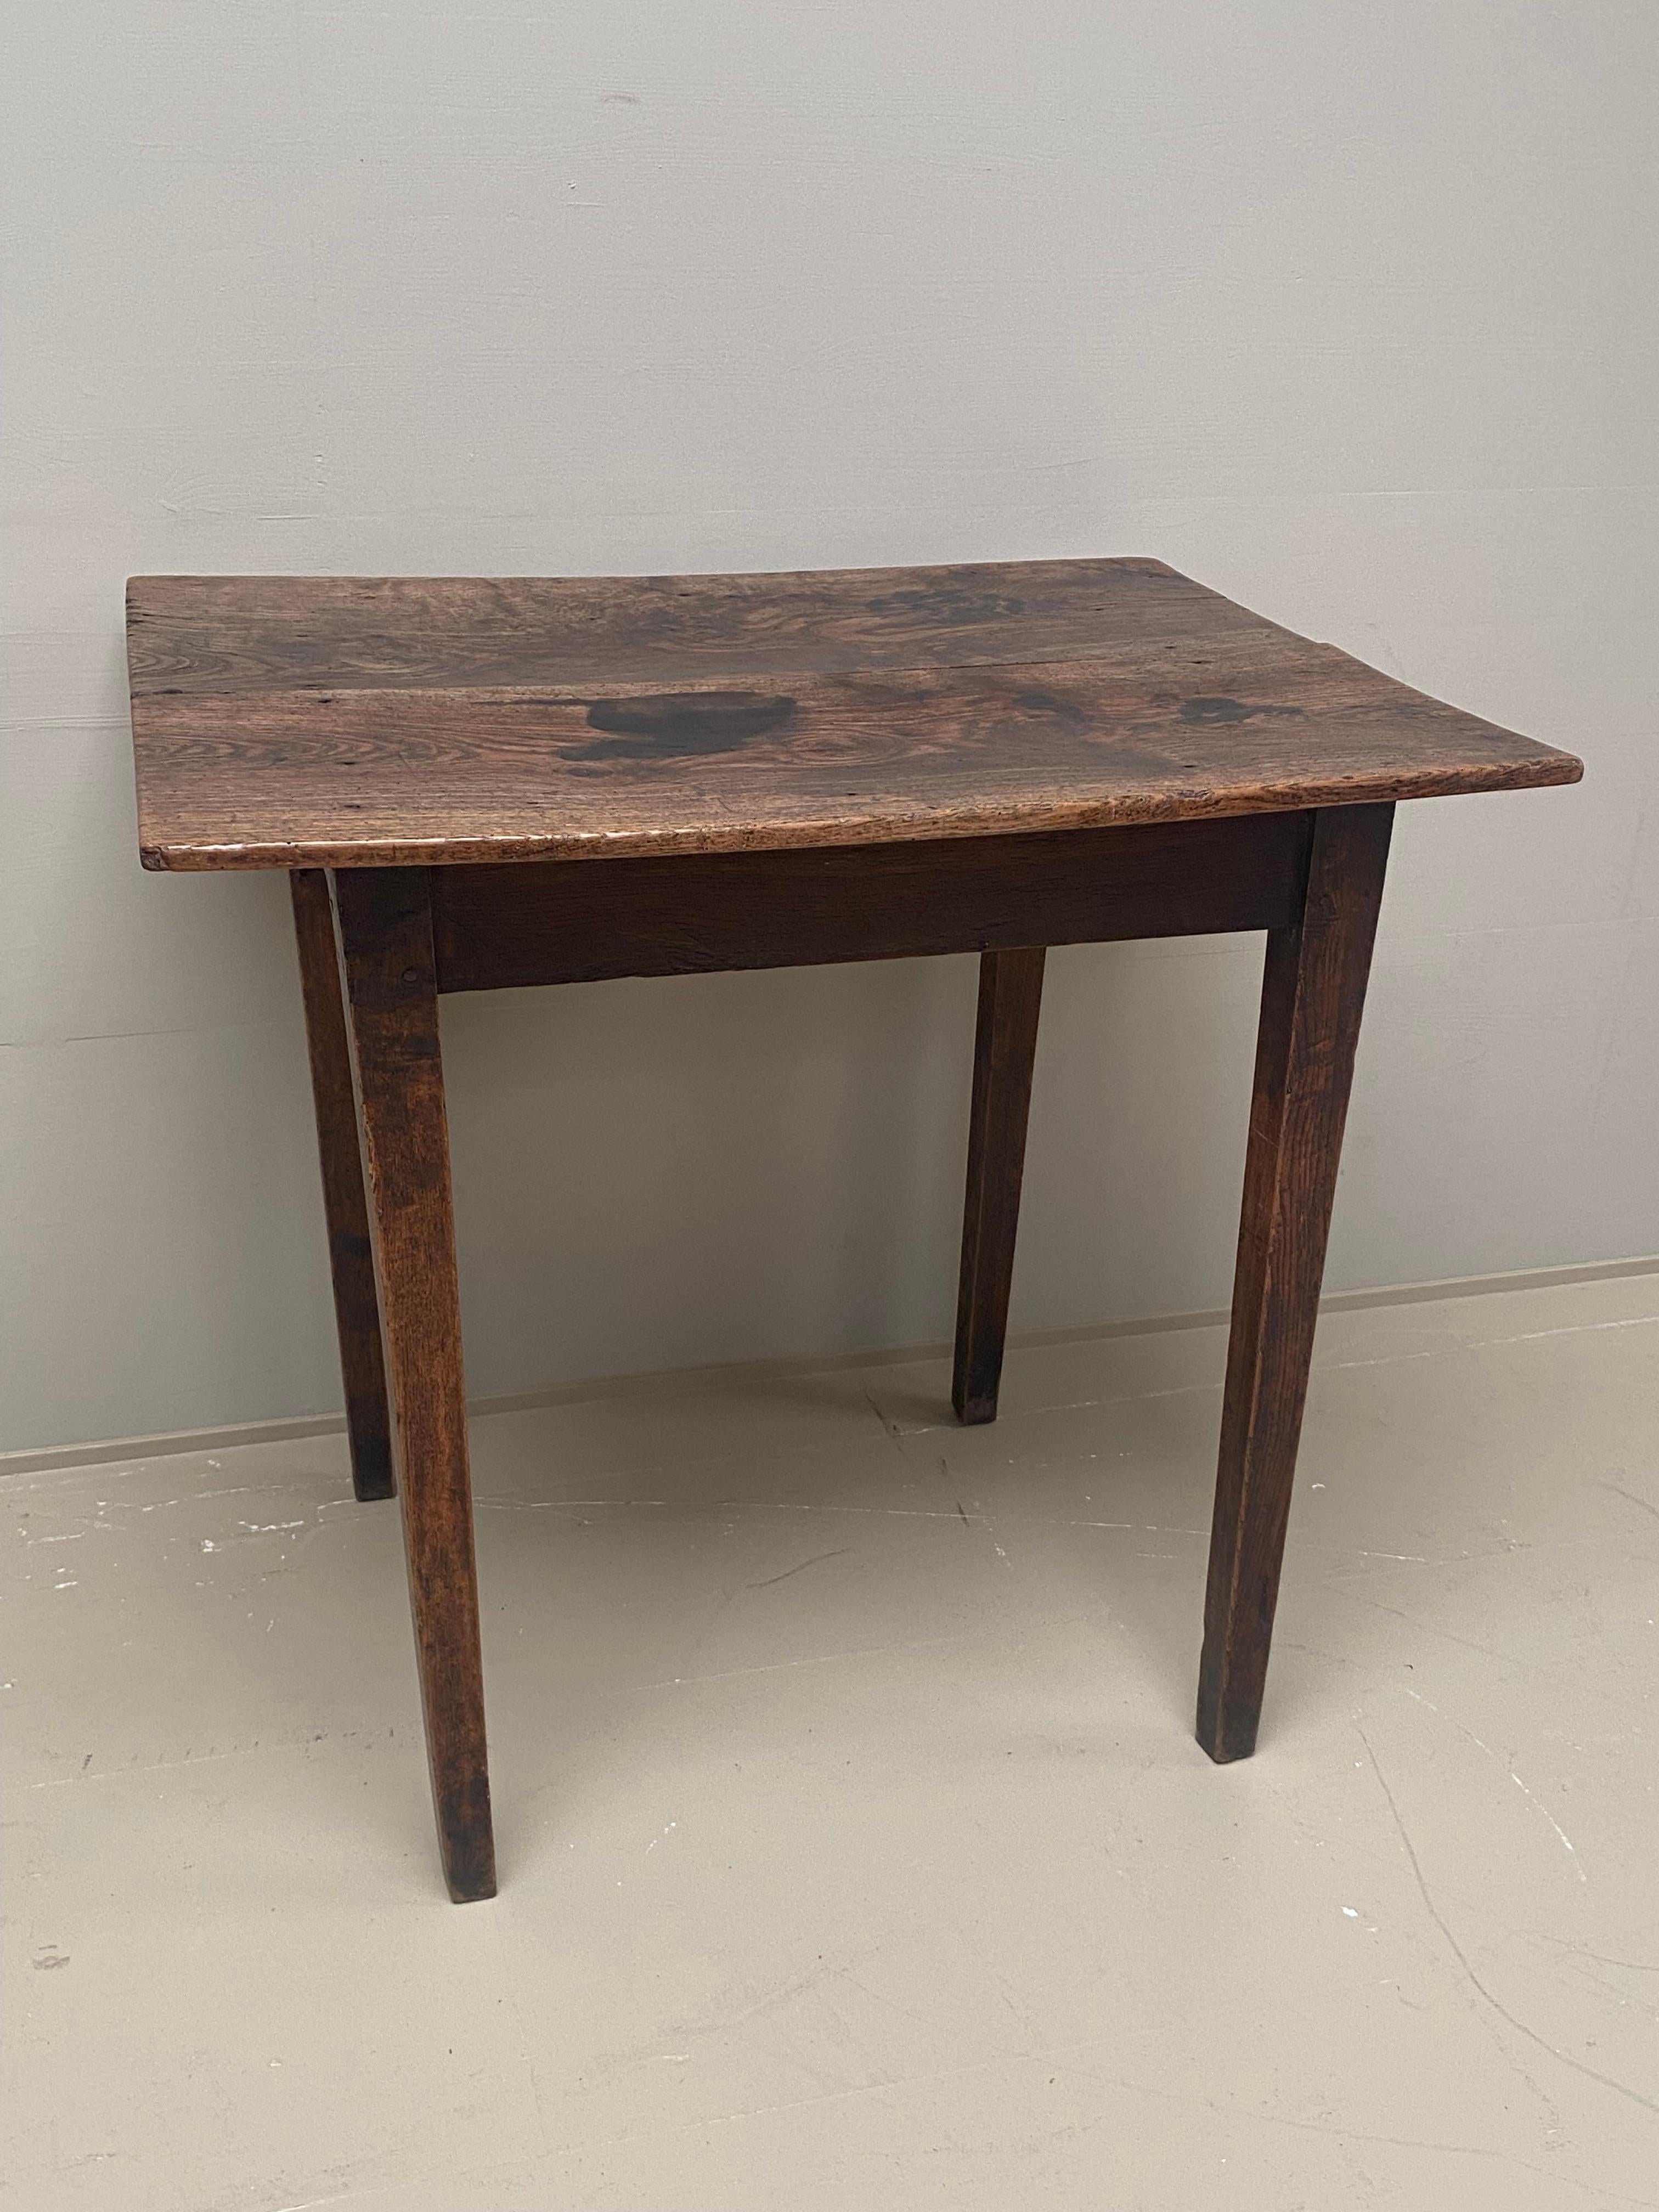 Englischer antiker Beistelltisch aus Ulmen- und Eschenholz,
18. Jahrhundert, um 1780,
Eleganter Mittel- oder Beistelltisch mit warmer und abgenutzter Oberfläche,
schönen Tisch durch seine Einfachheit.